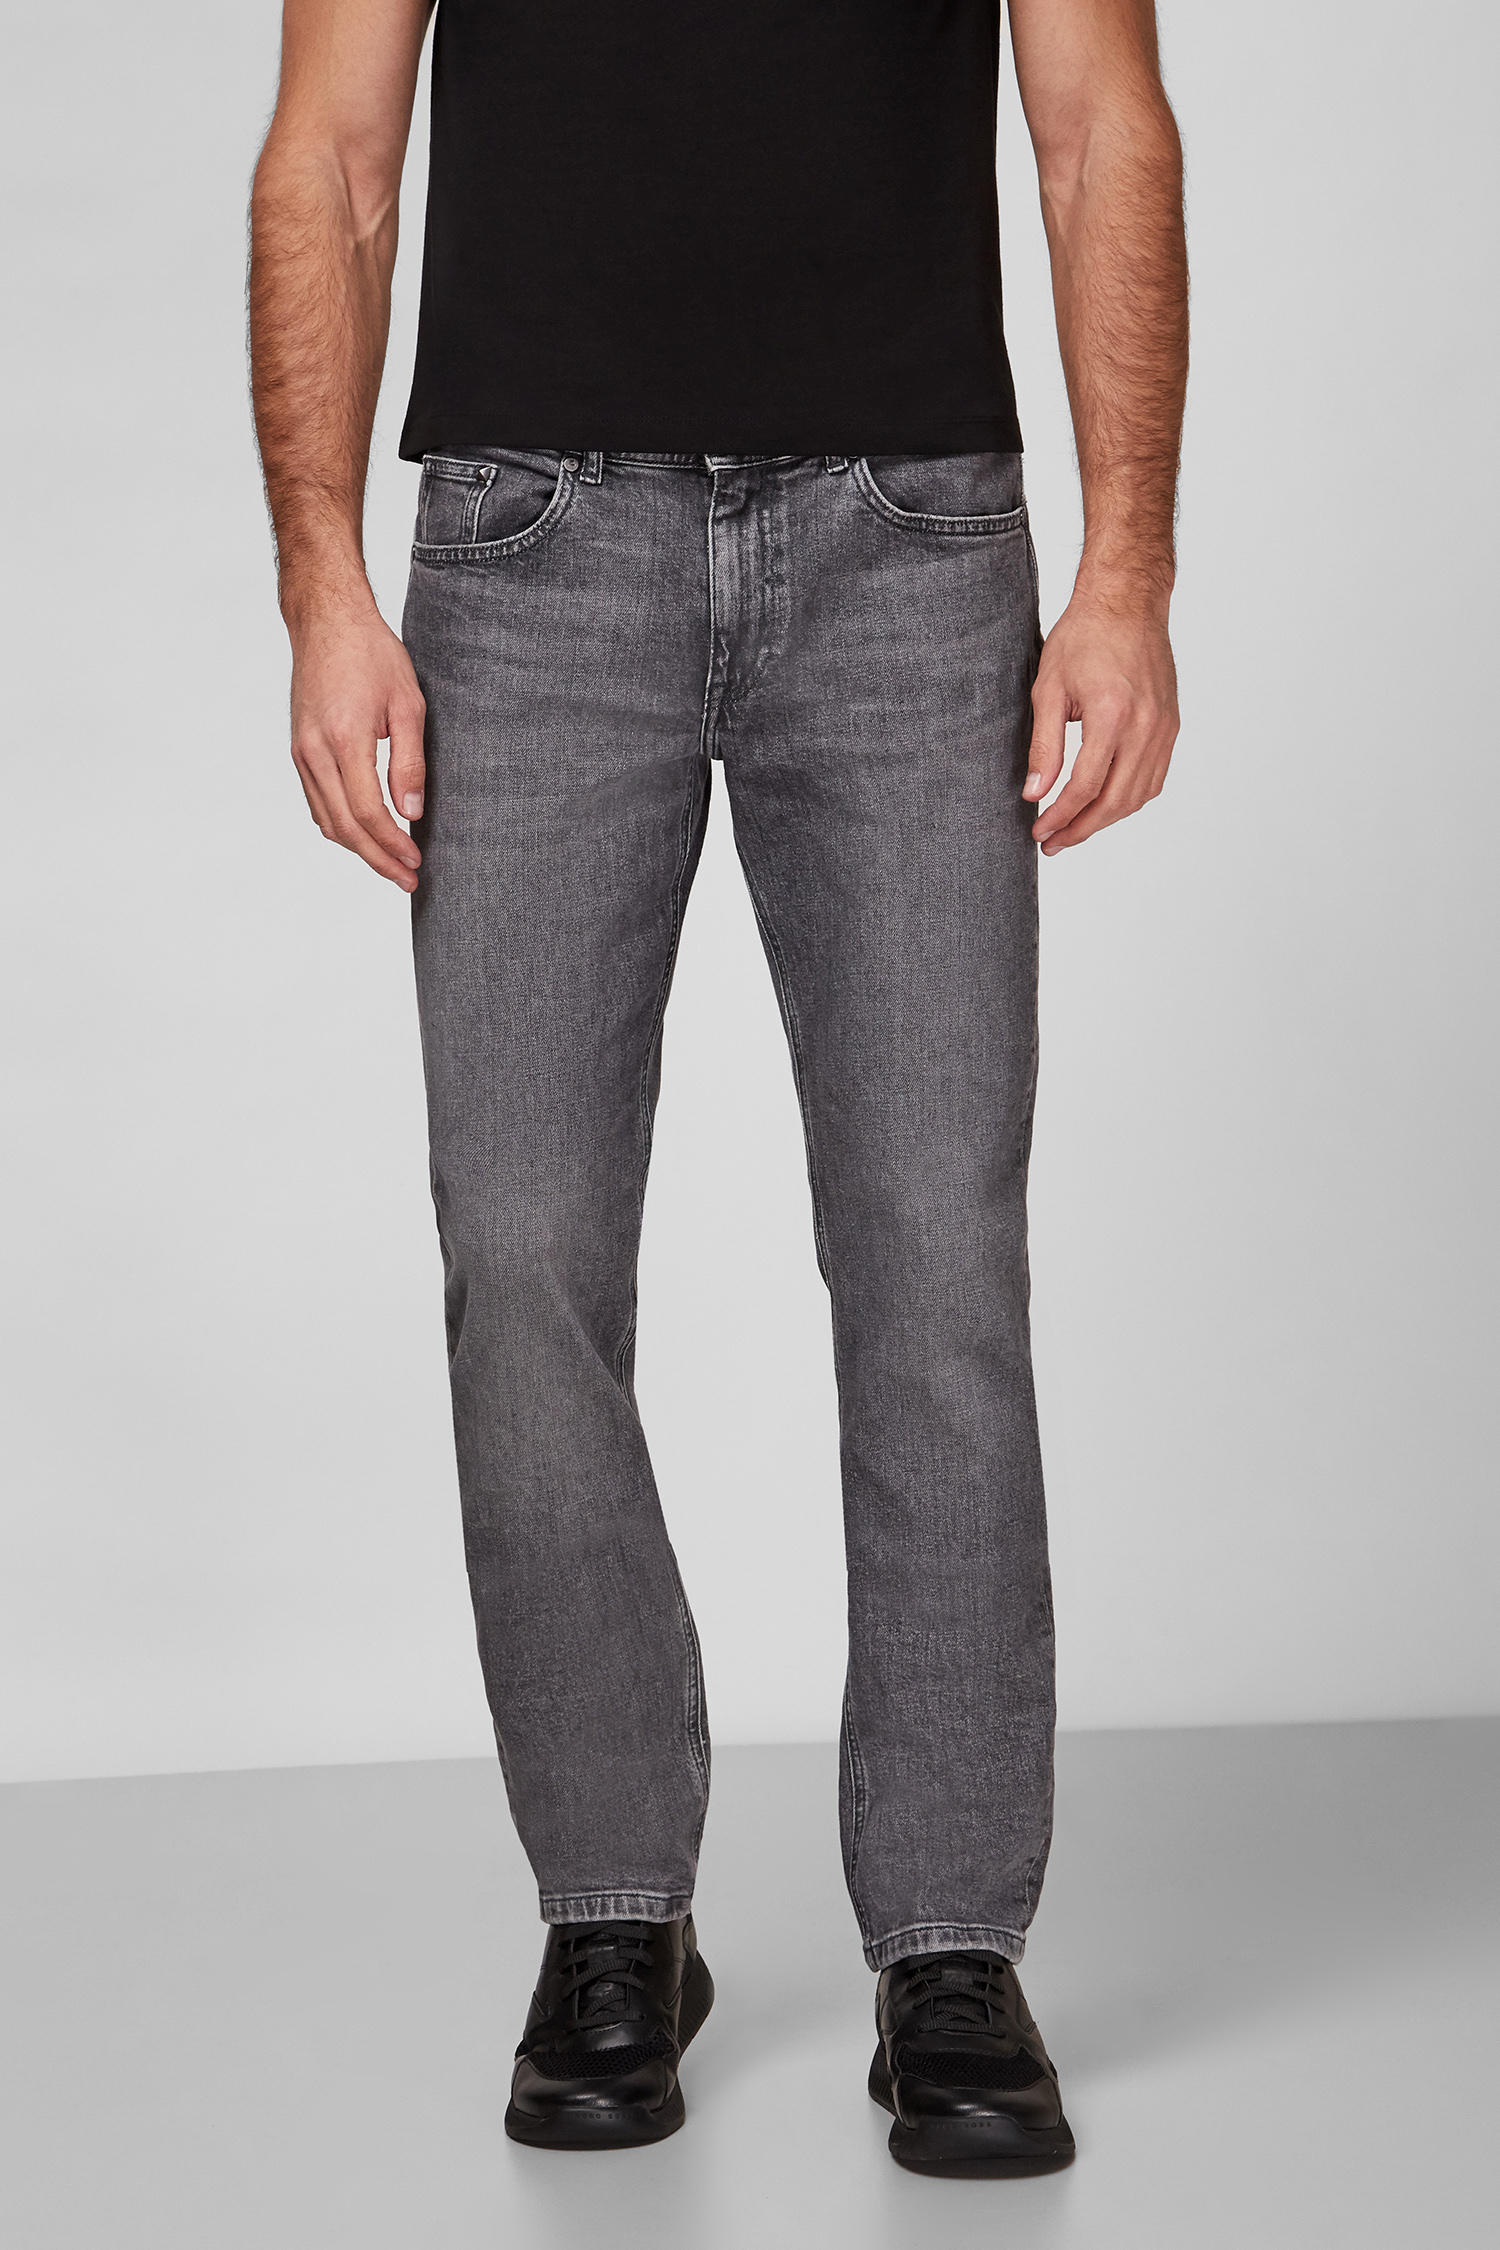 Чоловічі сірі джинси Karl Lagerfeld 512848.265844;970